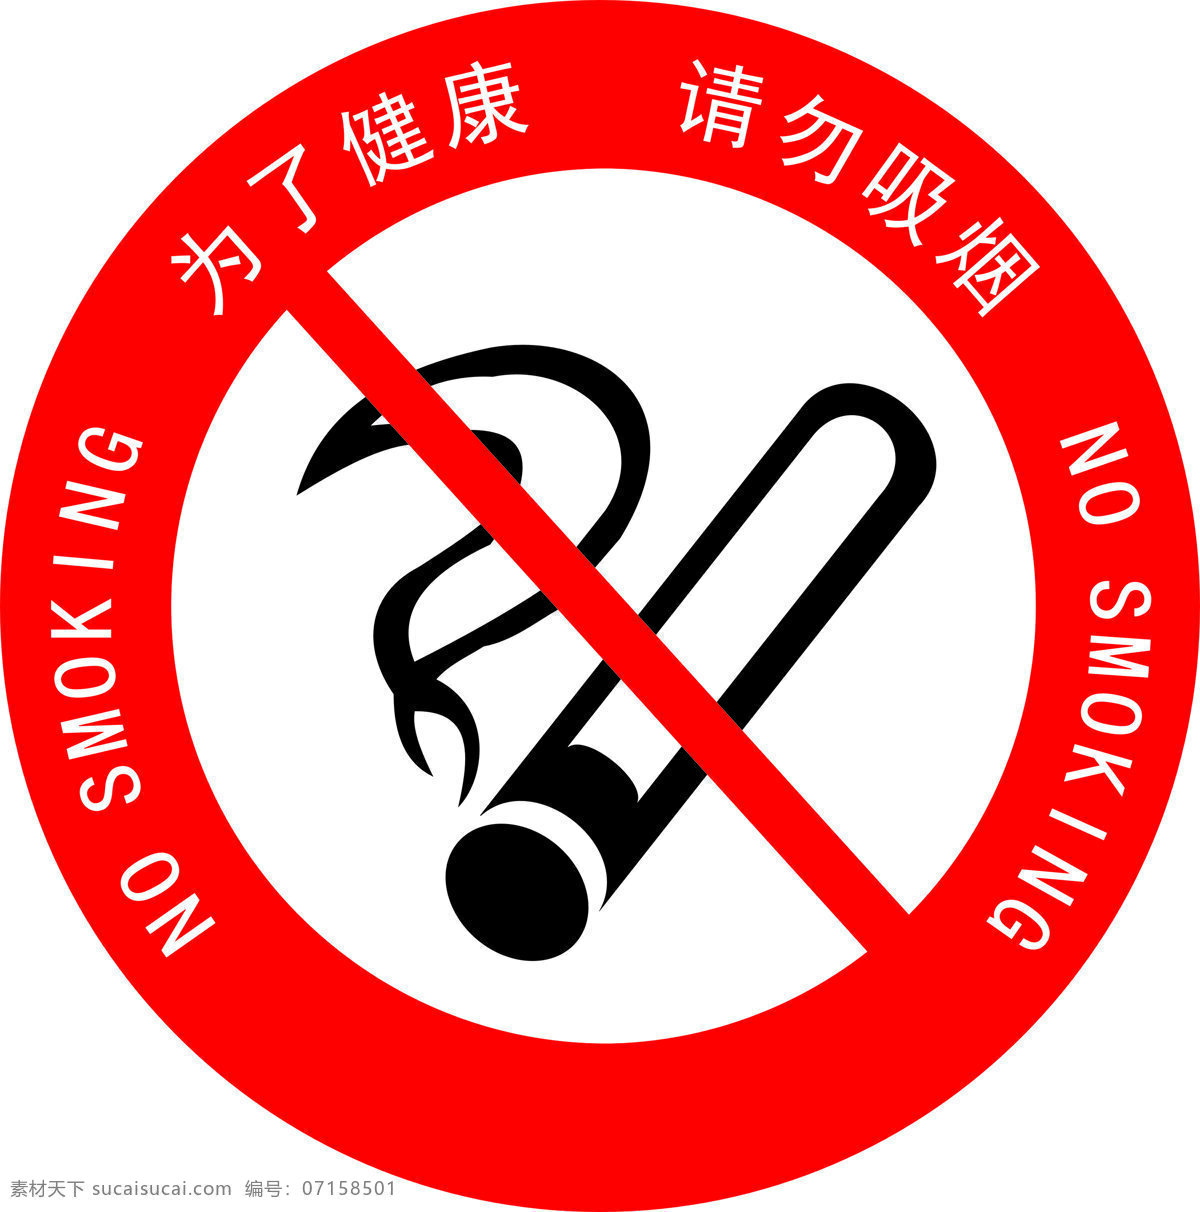 禁止吸烟 禁止吸烟标志 请勿吸烟标志 禁止标志 禁令 公共标志 公共标 常用标志 红色禁止 红色禁止标志 标志图标 公共标识标志